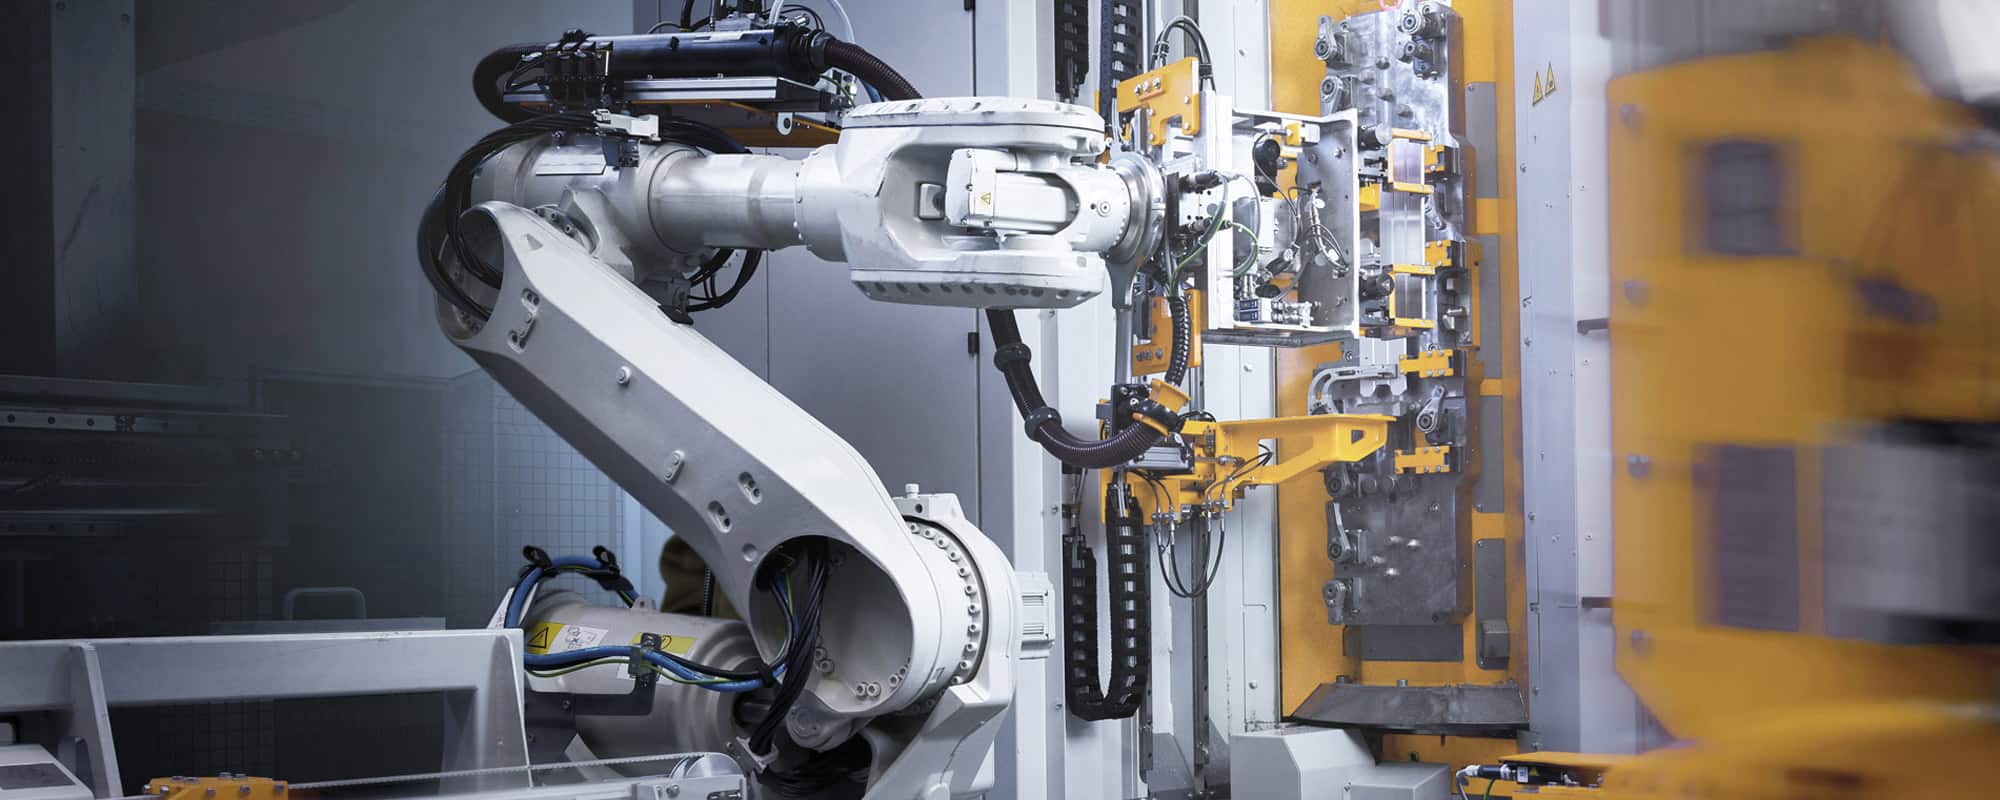 收购 Rollon 和 Cone Drive 助铁姆肯公司在机器人驱动系统市场占据领先地位